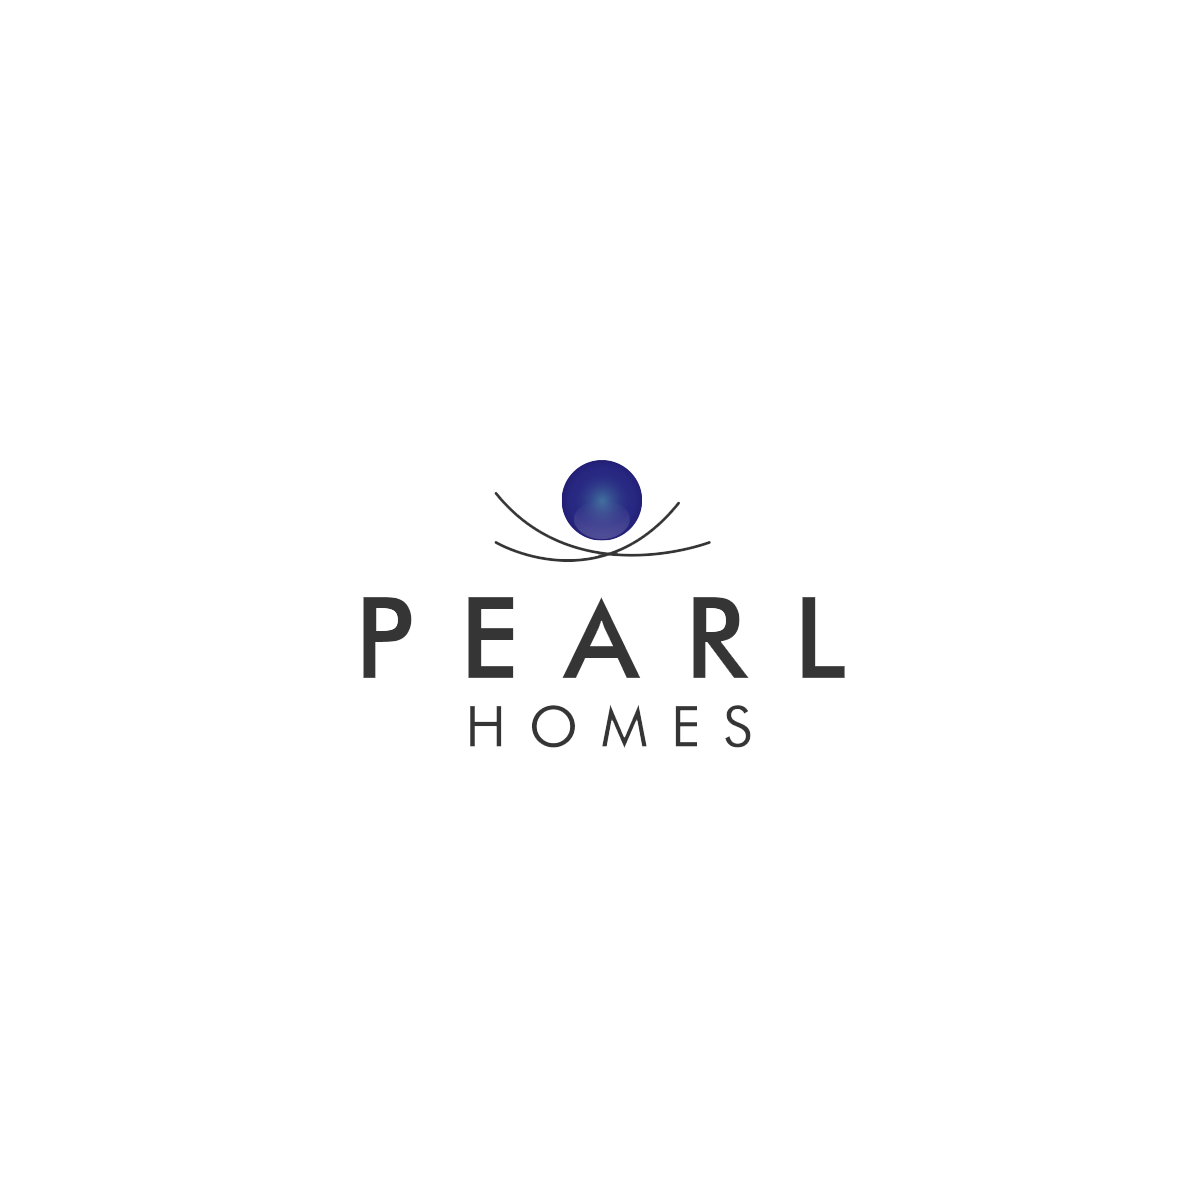 Pearl Homes company logo